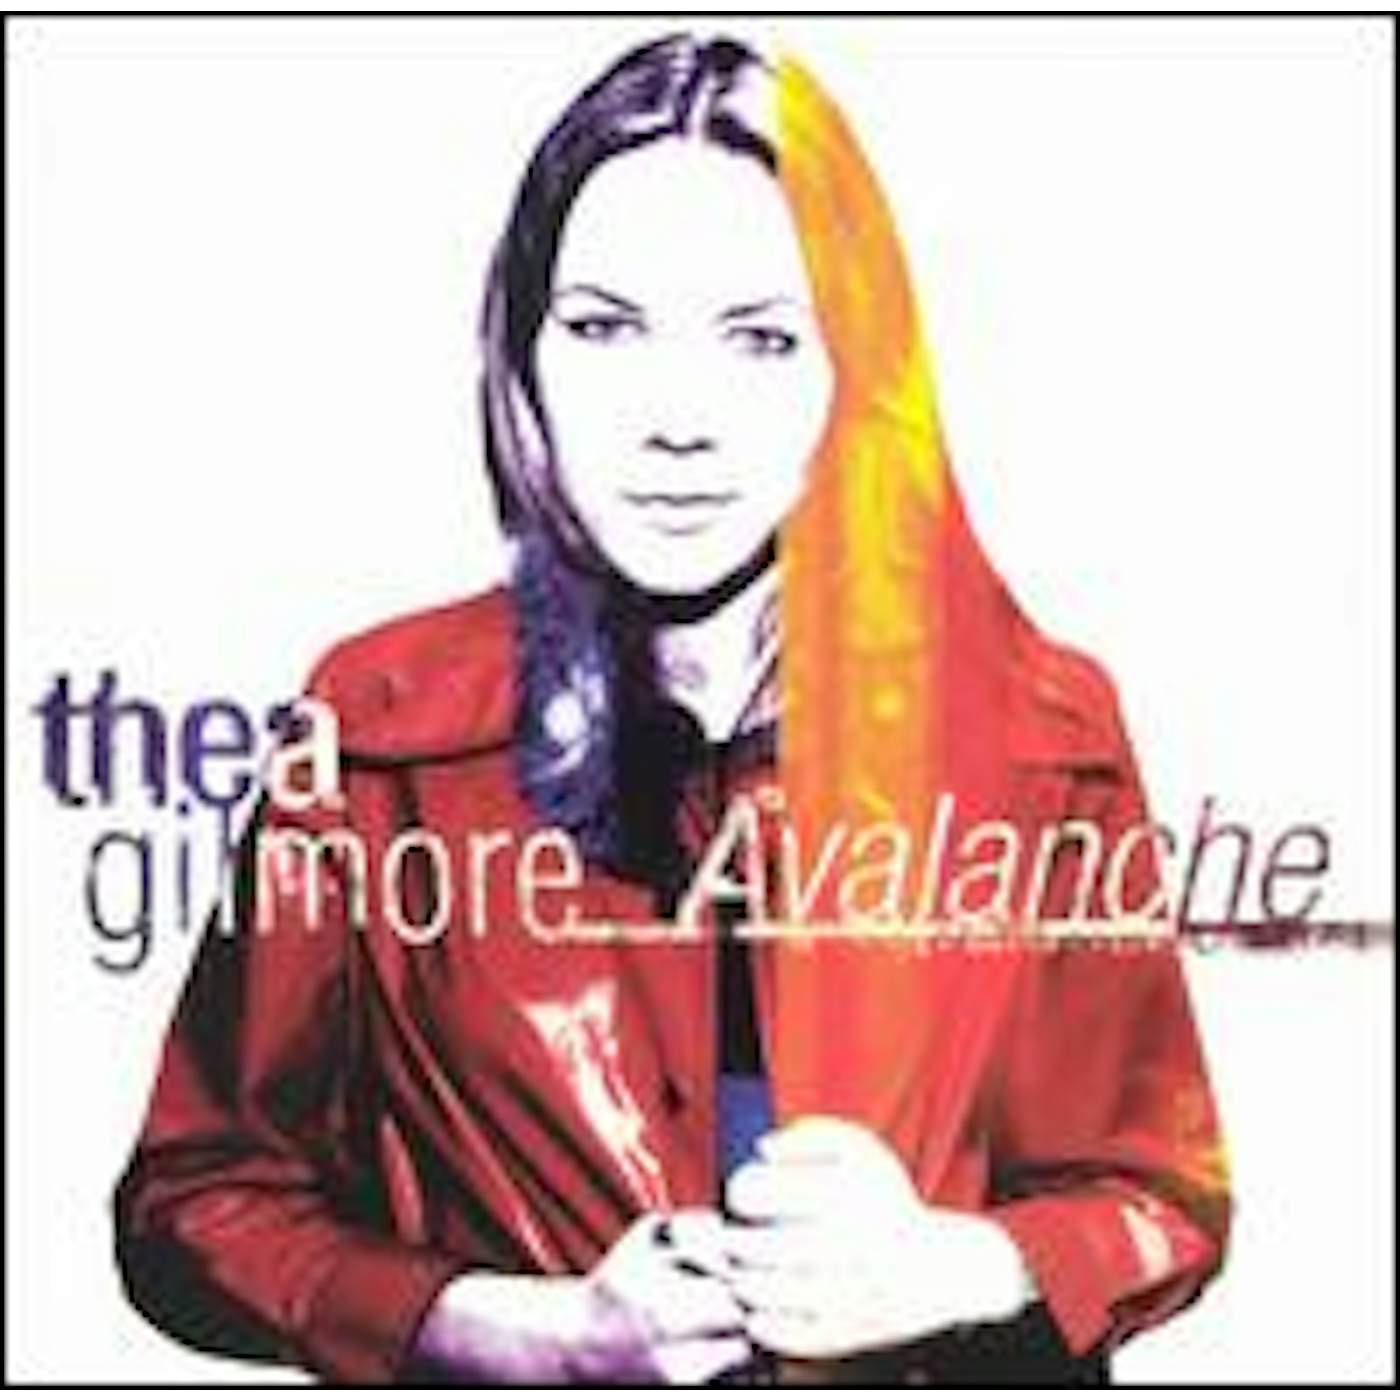 Thea Gilmore AVALANCHE CD